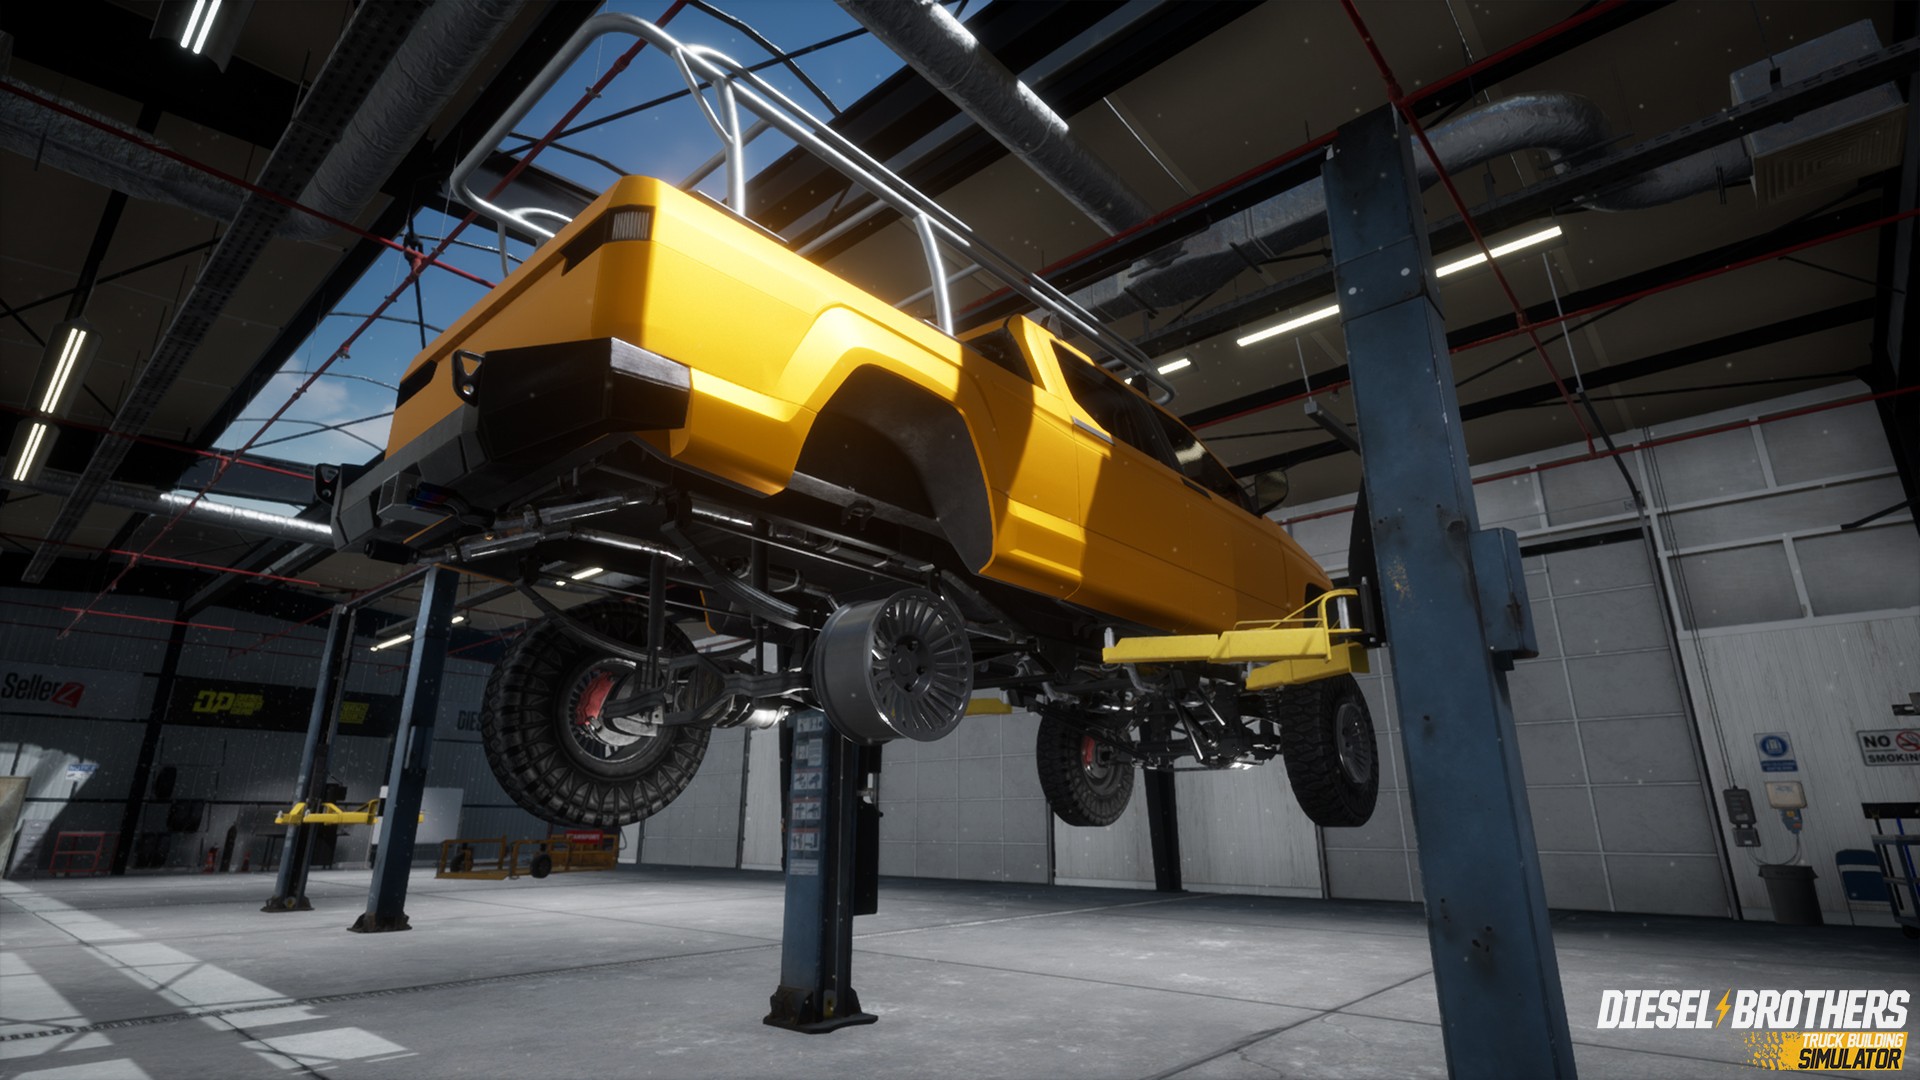 Diesel Brothers Truck Building Simulator Review Bonus Stage